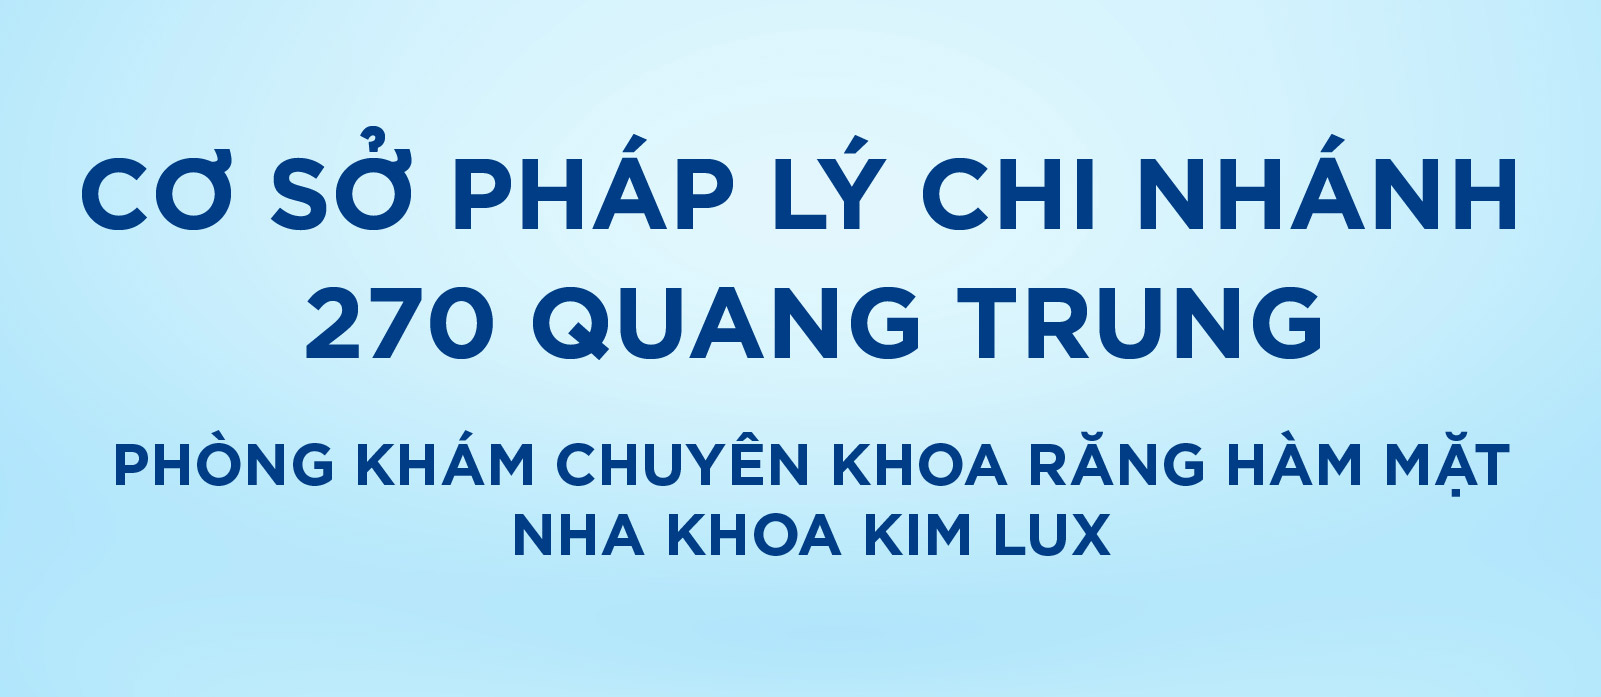 [Top Banner Mobile] Bảo vệ: Cơ sở pháp lý phòng khám chuyên khoa răng hàm mặt Nha Khoa Kim Lux 270 Quang Trung